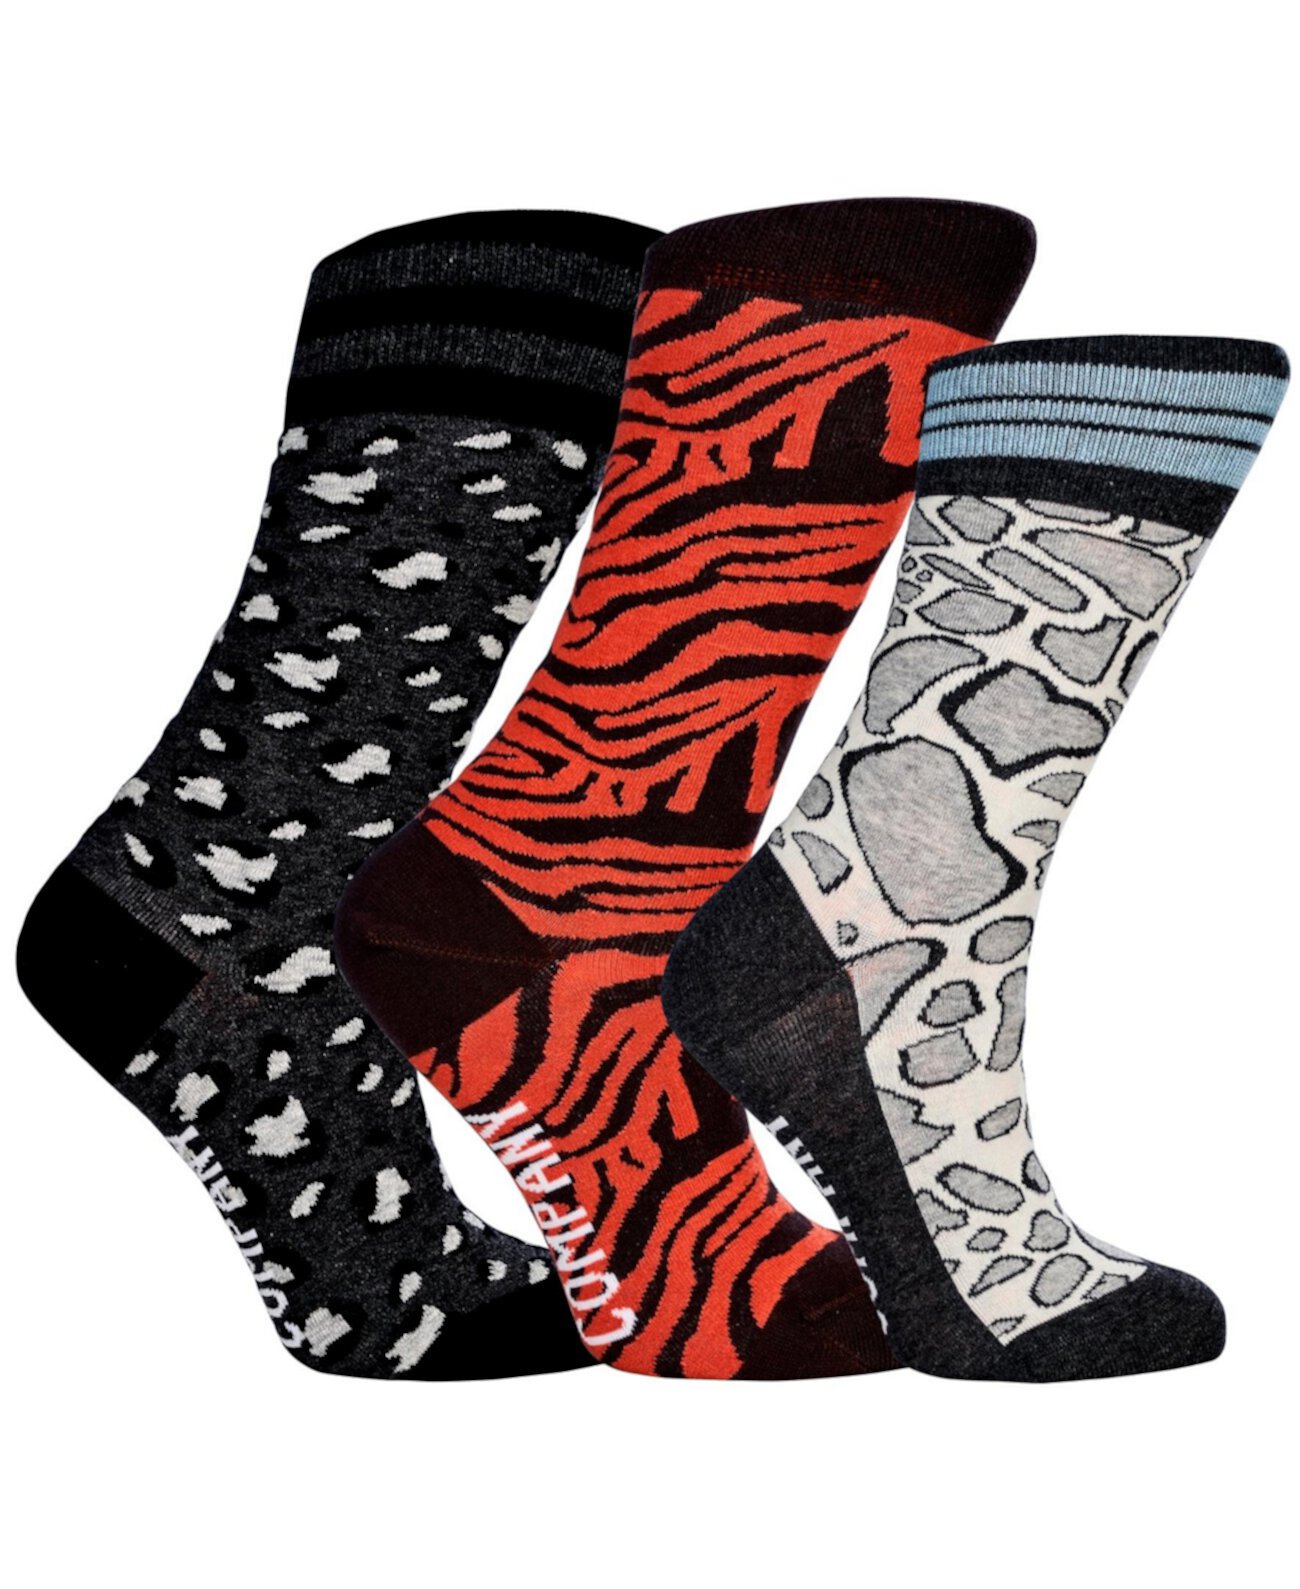 Комплект хлопковых носков с бесшовным мыском для женщин Wild Cats Премиум с цветным принтом животных и рисунком, набор из 3 шт. Love Sock Company